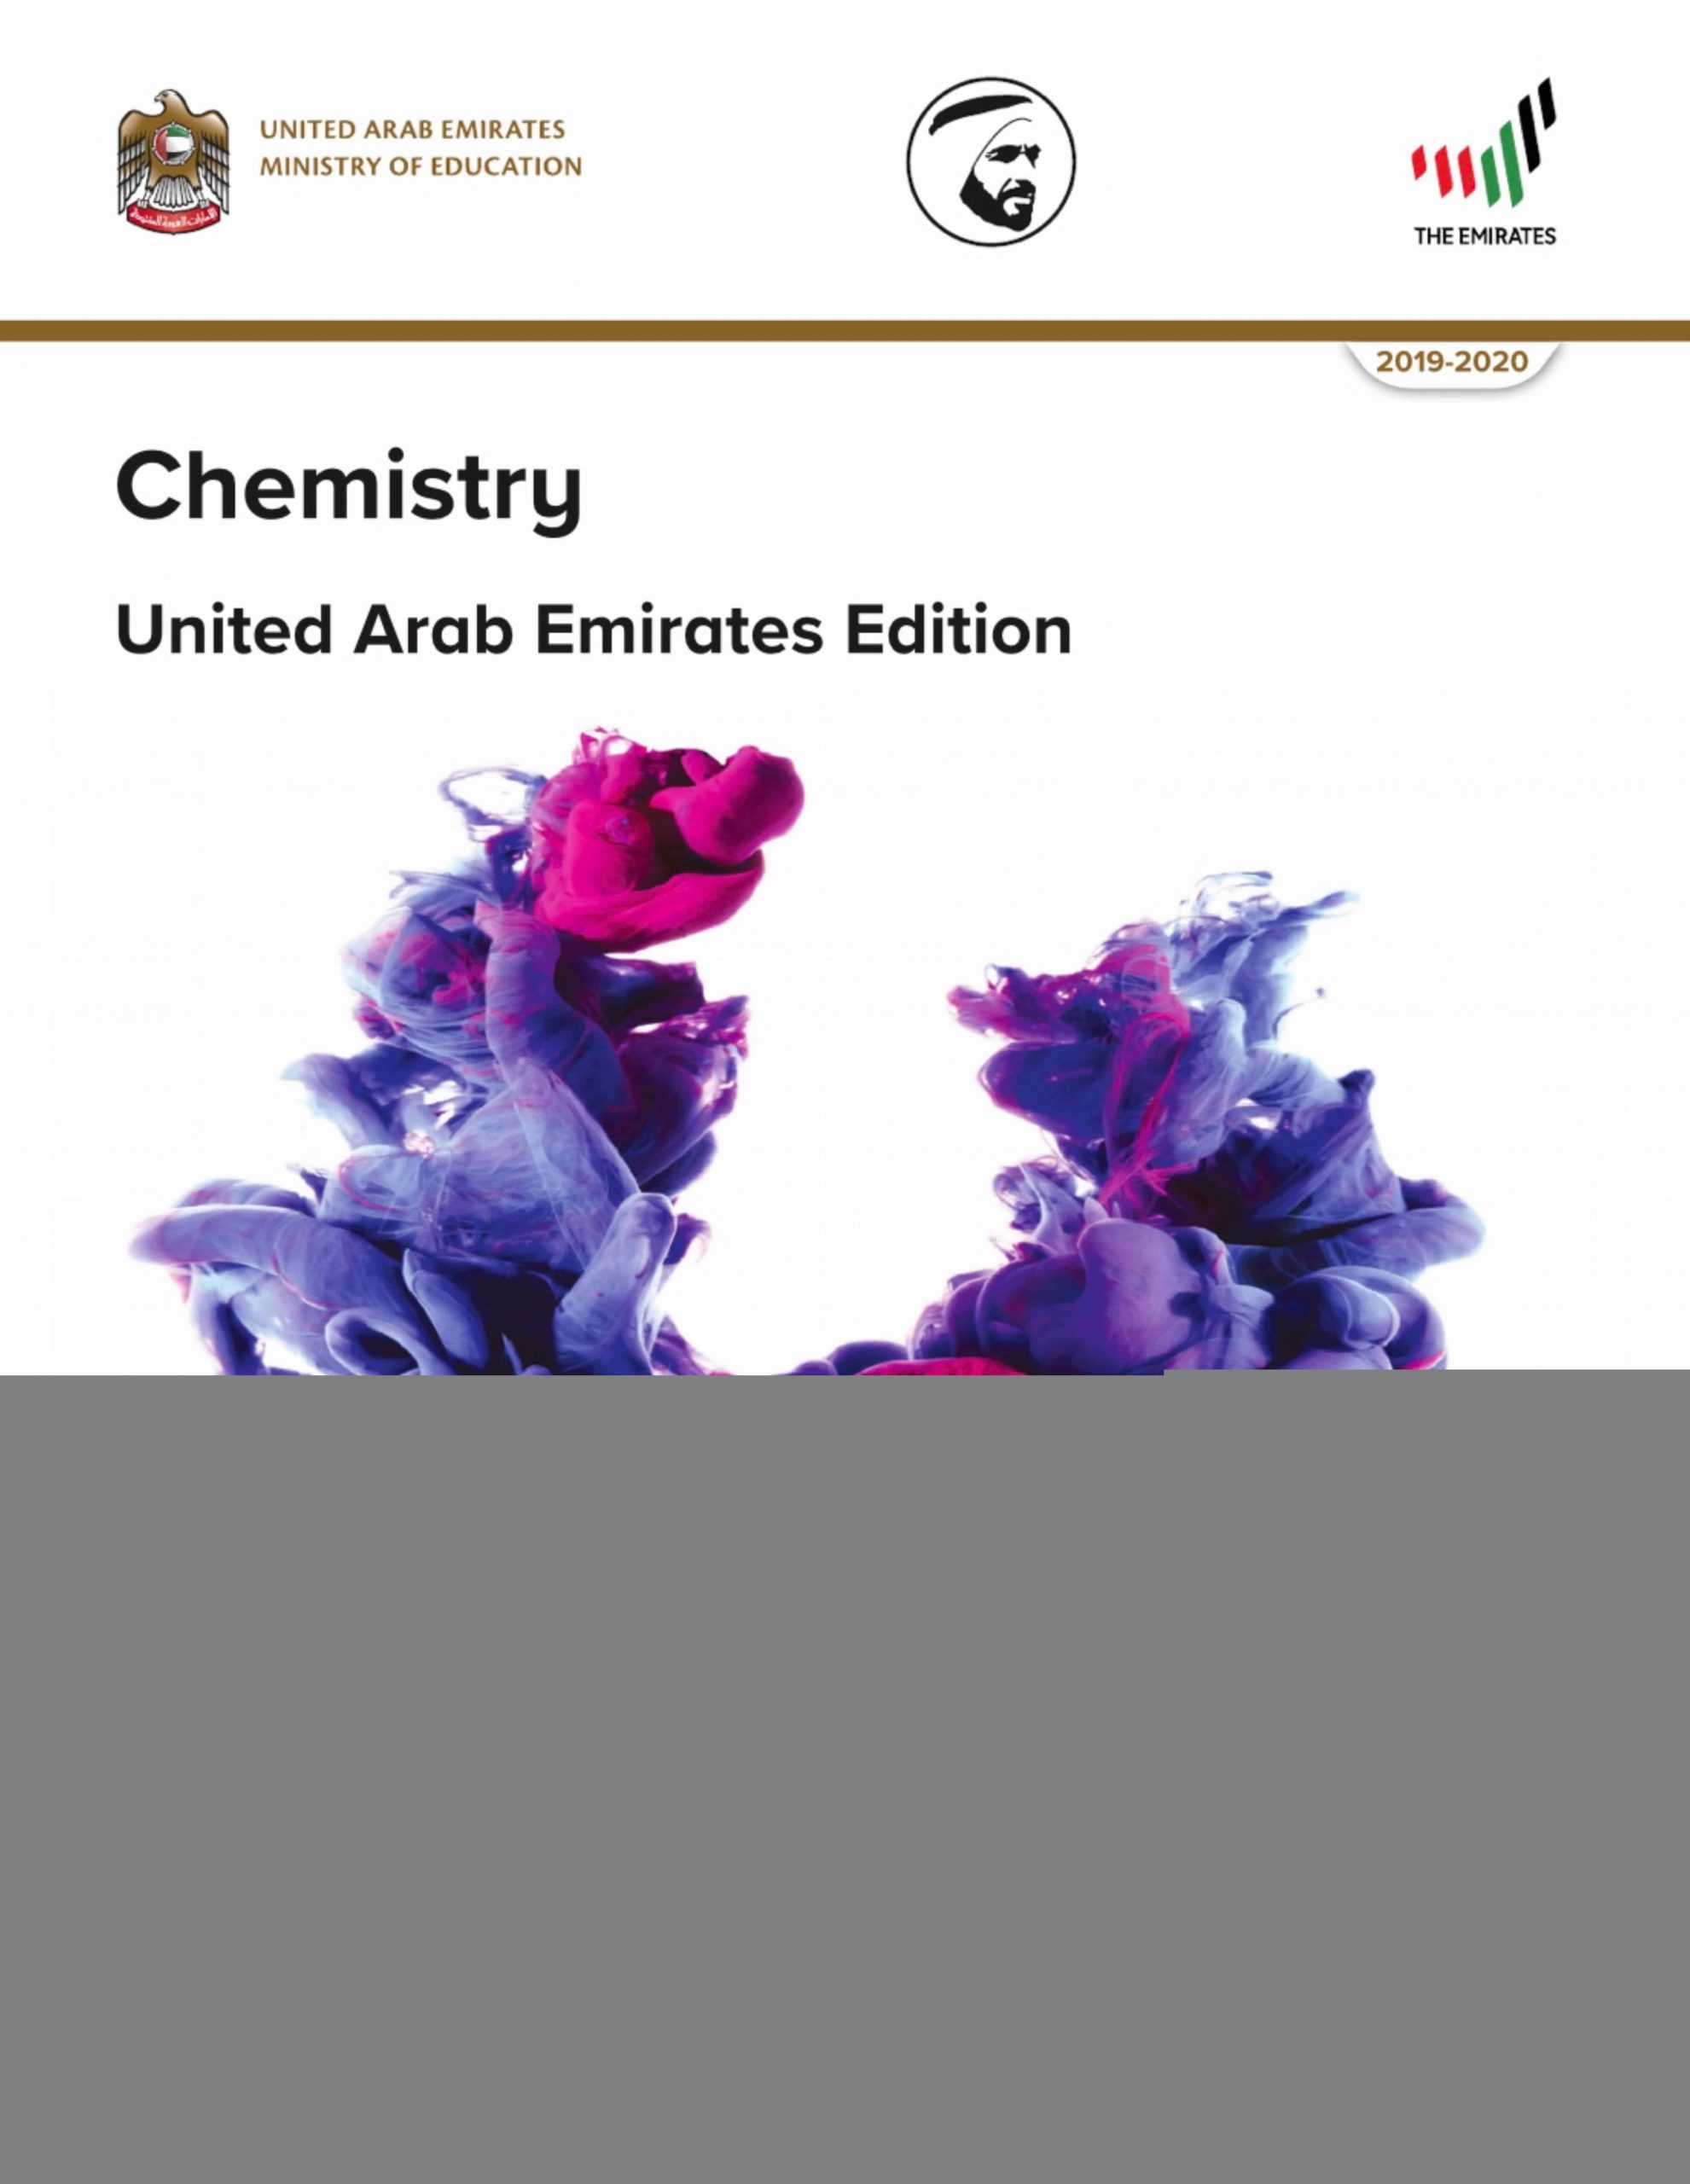 كتاب الطالب بالإنجليزي الفصل الدراسي الثالث 2019-2020 الصف الثاني عشر متقدم مادة الكيمياء 